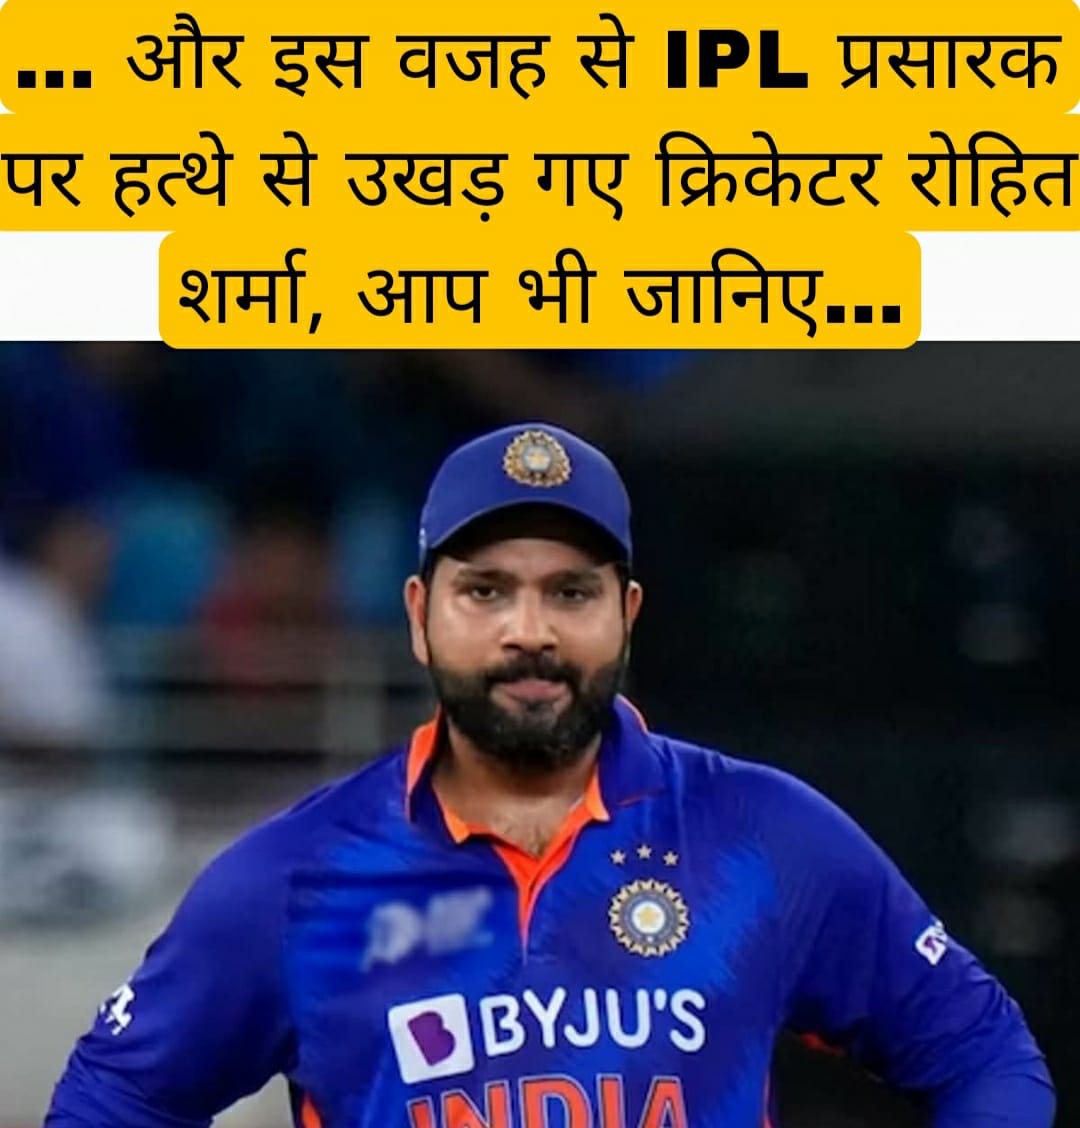 … और इस वजह से IPL प्रसारक पर हत्थे से उखड़ गए क्रिकेटर रोहित शर्मा, आप भी जानिए…